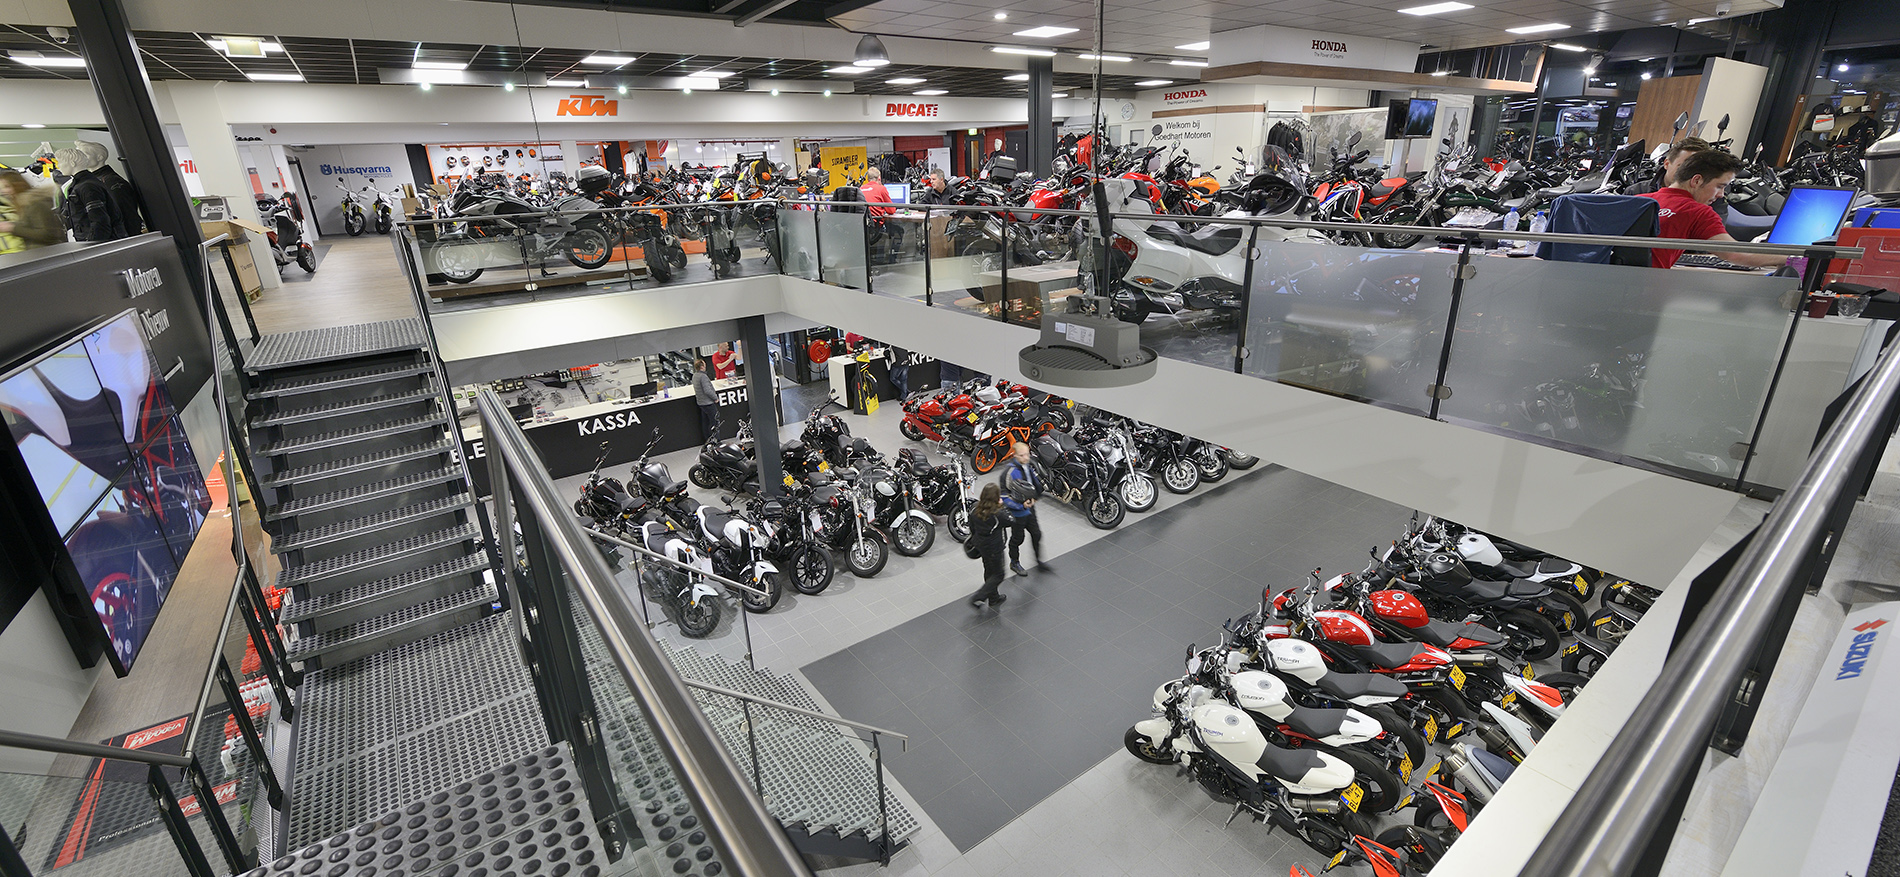 Goedhart Motoren, Bodegraven - Shop in Shop